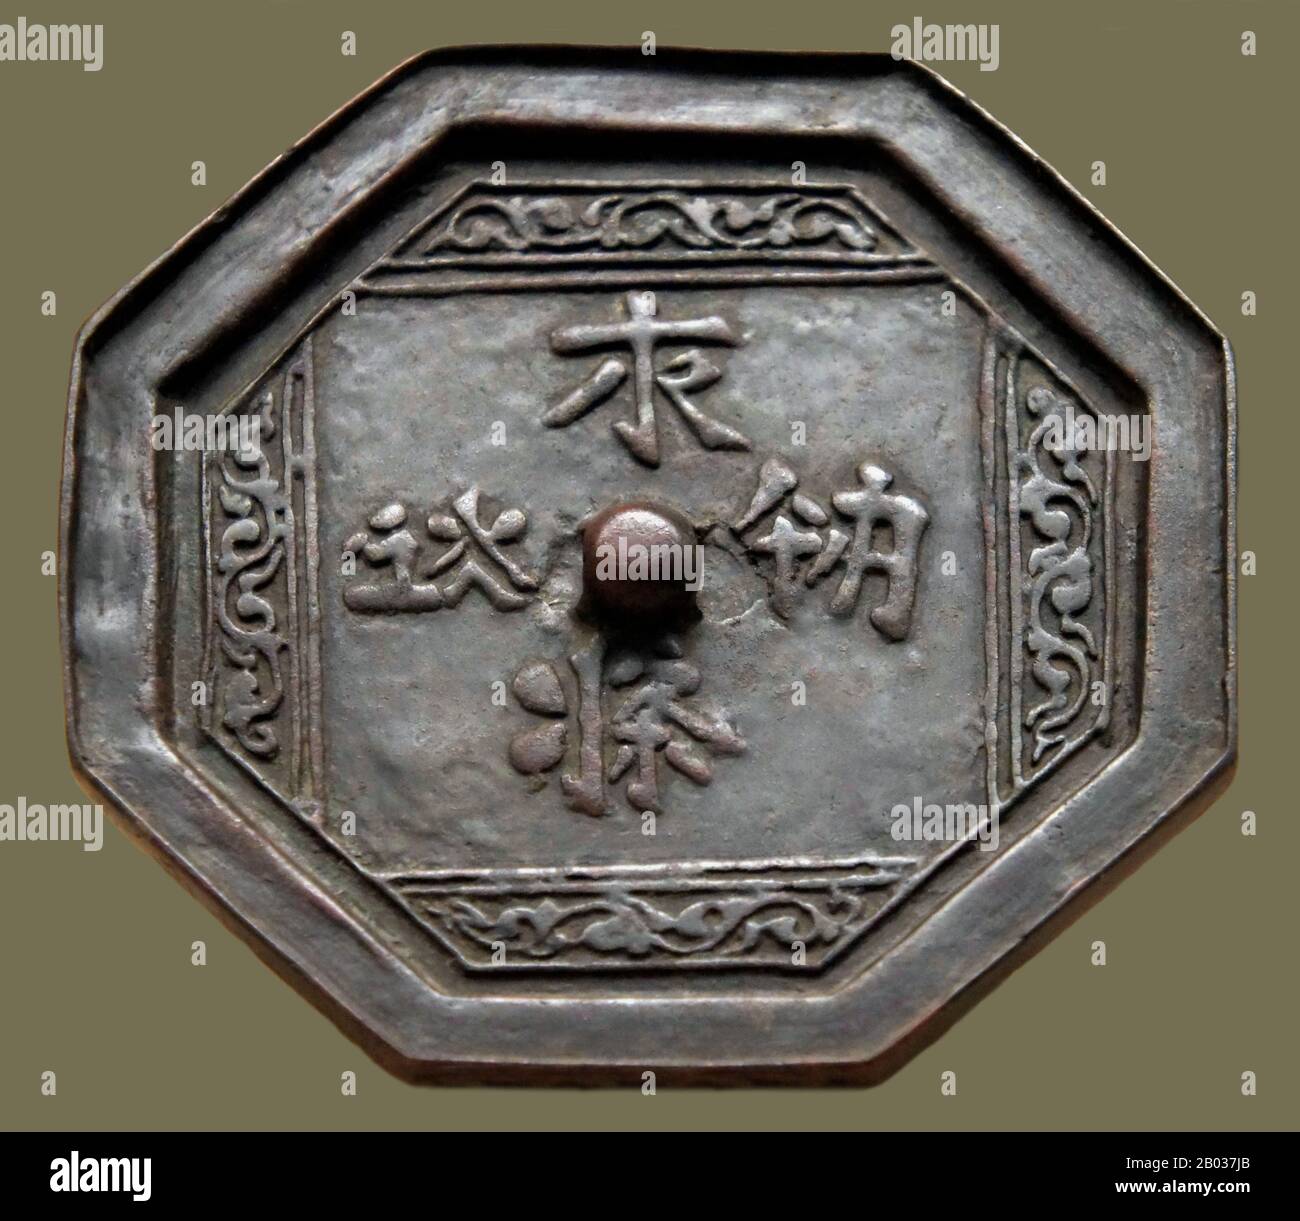 Die Khitan-Kleinschrift war eines von zwei Khitan-Schreibsystemen, die für die inzwischen ausgerottete Khitan-Sprache verwendet wurden. Es wurde hauptsächlich im 10. Bis 12. Jahrhundert von den Khitan benutzt, die das Liao-Reich im Nordosten Chinas gegründet hatten. Die Khitaner verwendeten auch ein funktionell unabhängiges Schreibsystem, das als Khitan-Großschrift bekannt ist. Beide Khitan-Schriften wurden einige Jahrzehnte nach dem Fall der Liao-Dynastie im Jahre 1125 CE weiterhin in gewissem Umfang von den Jurchens verwendet, bis die Jurchens vollständig auf eine eigene Schrift umwechselten. Beispiele für die Drehbücher erschienen am häufigsten auf Epitaphen und Denkmälern, altho Stockfoto